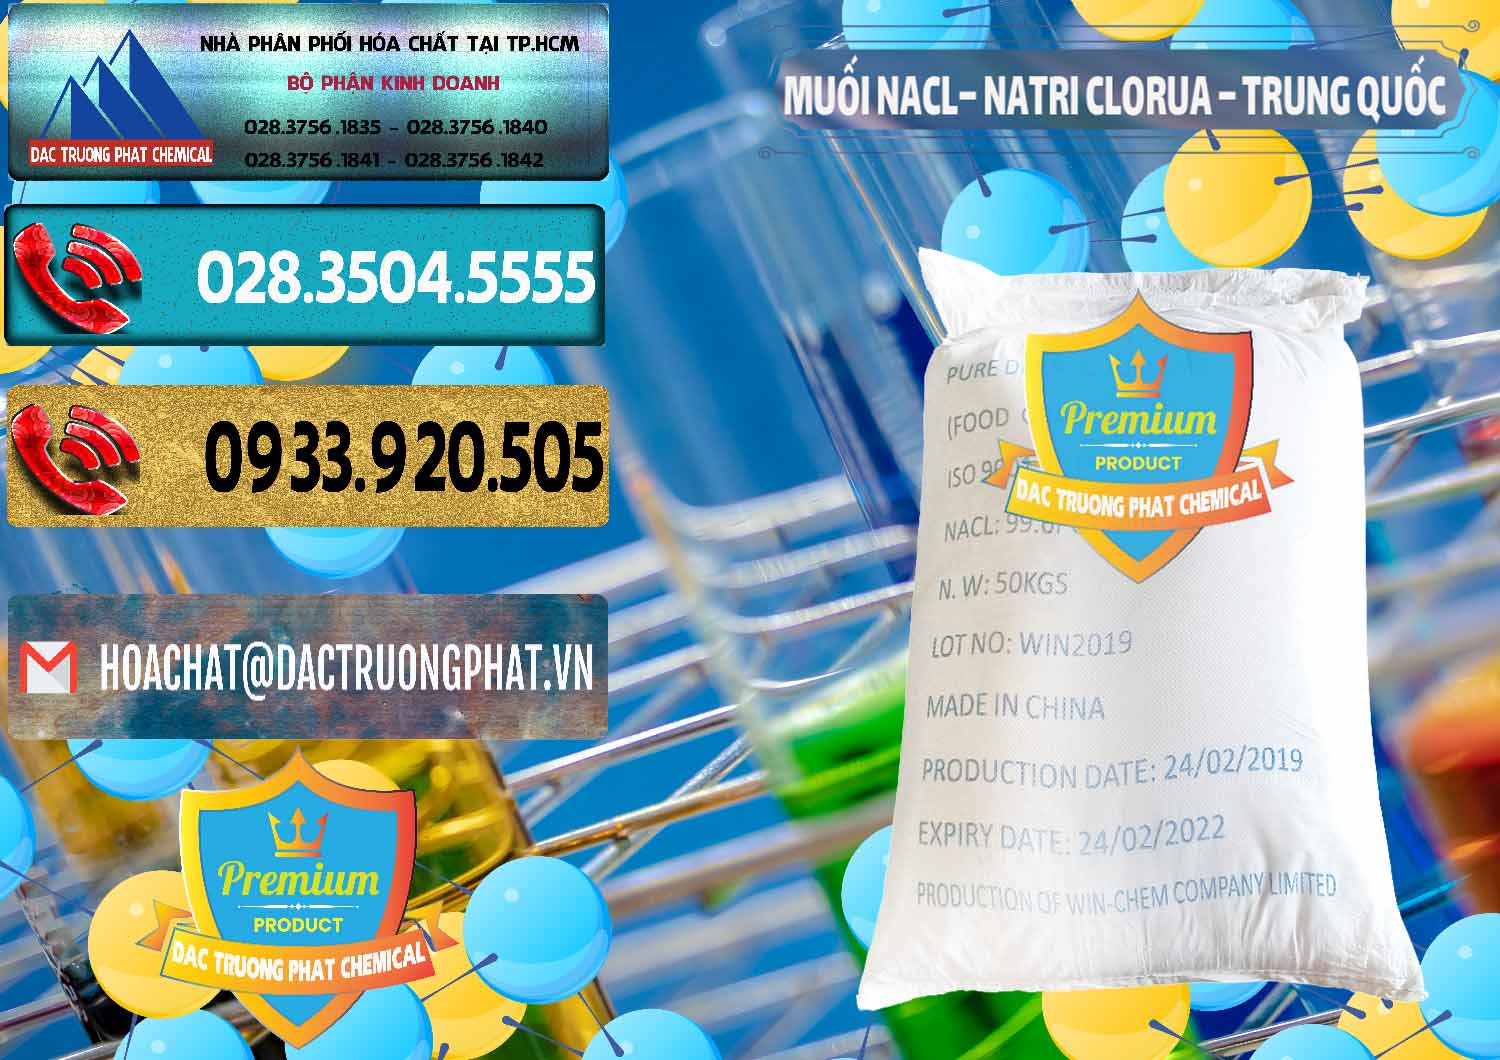 Cty cung cấp & bán Muối NaCL – Sodium Chloride Trung Quốc China - 0097 - Bán ( cung cấp ) hóa chất tại TP.HCM - hoachatdetnhuom.com